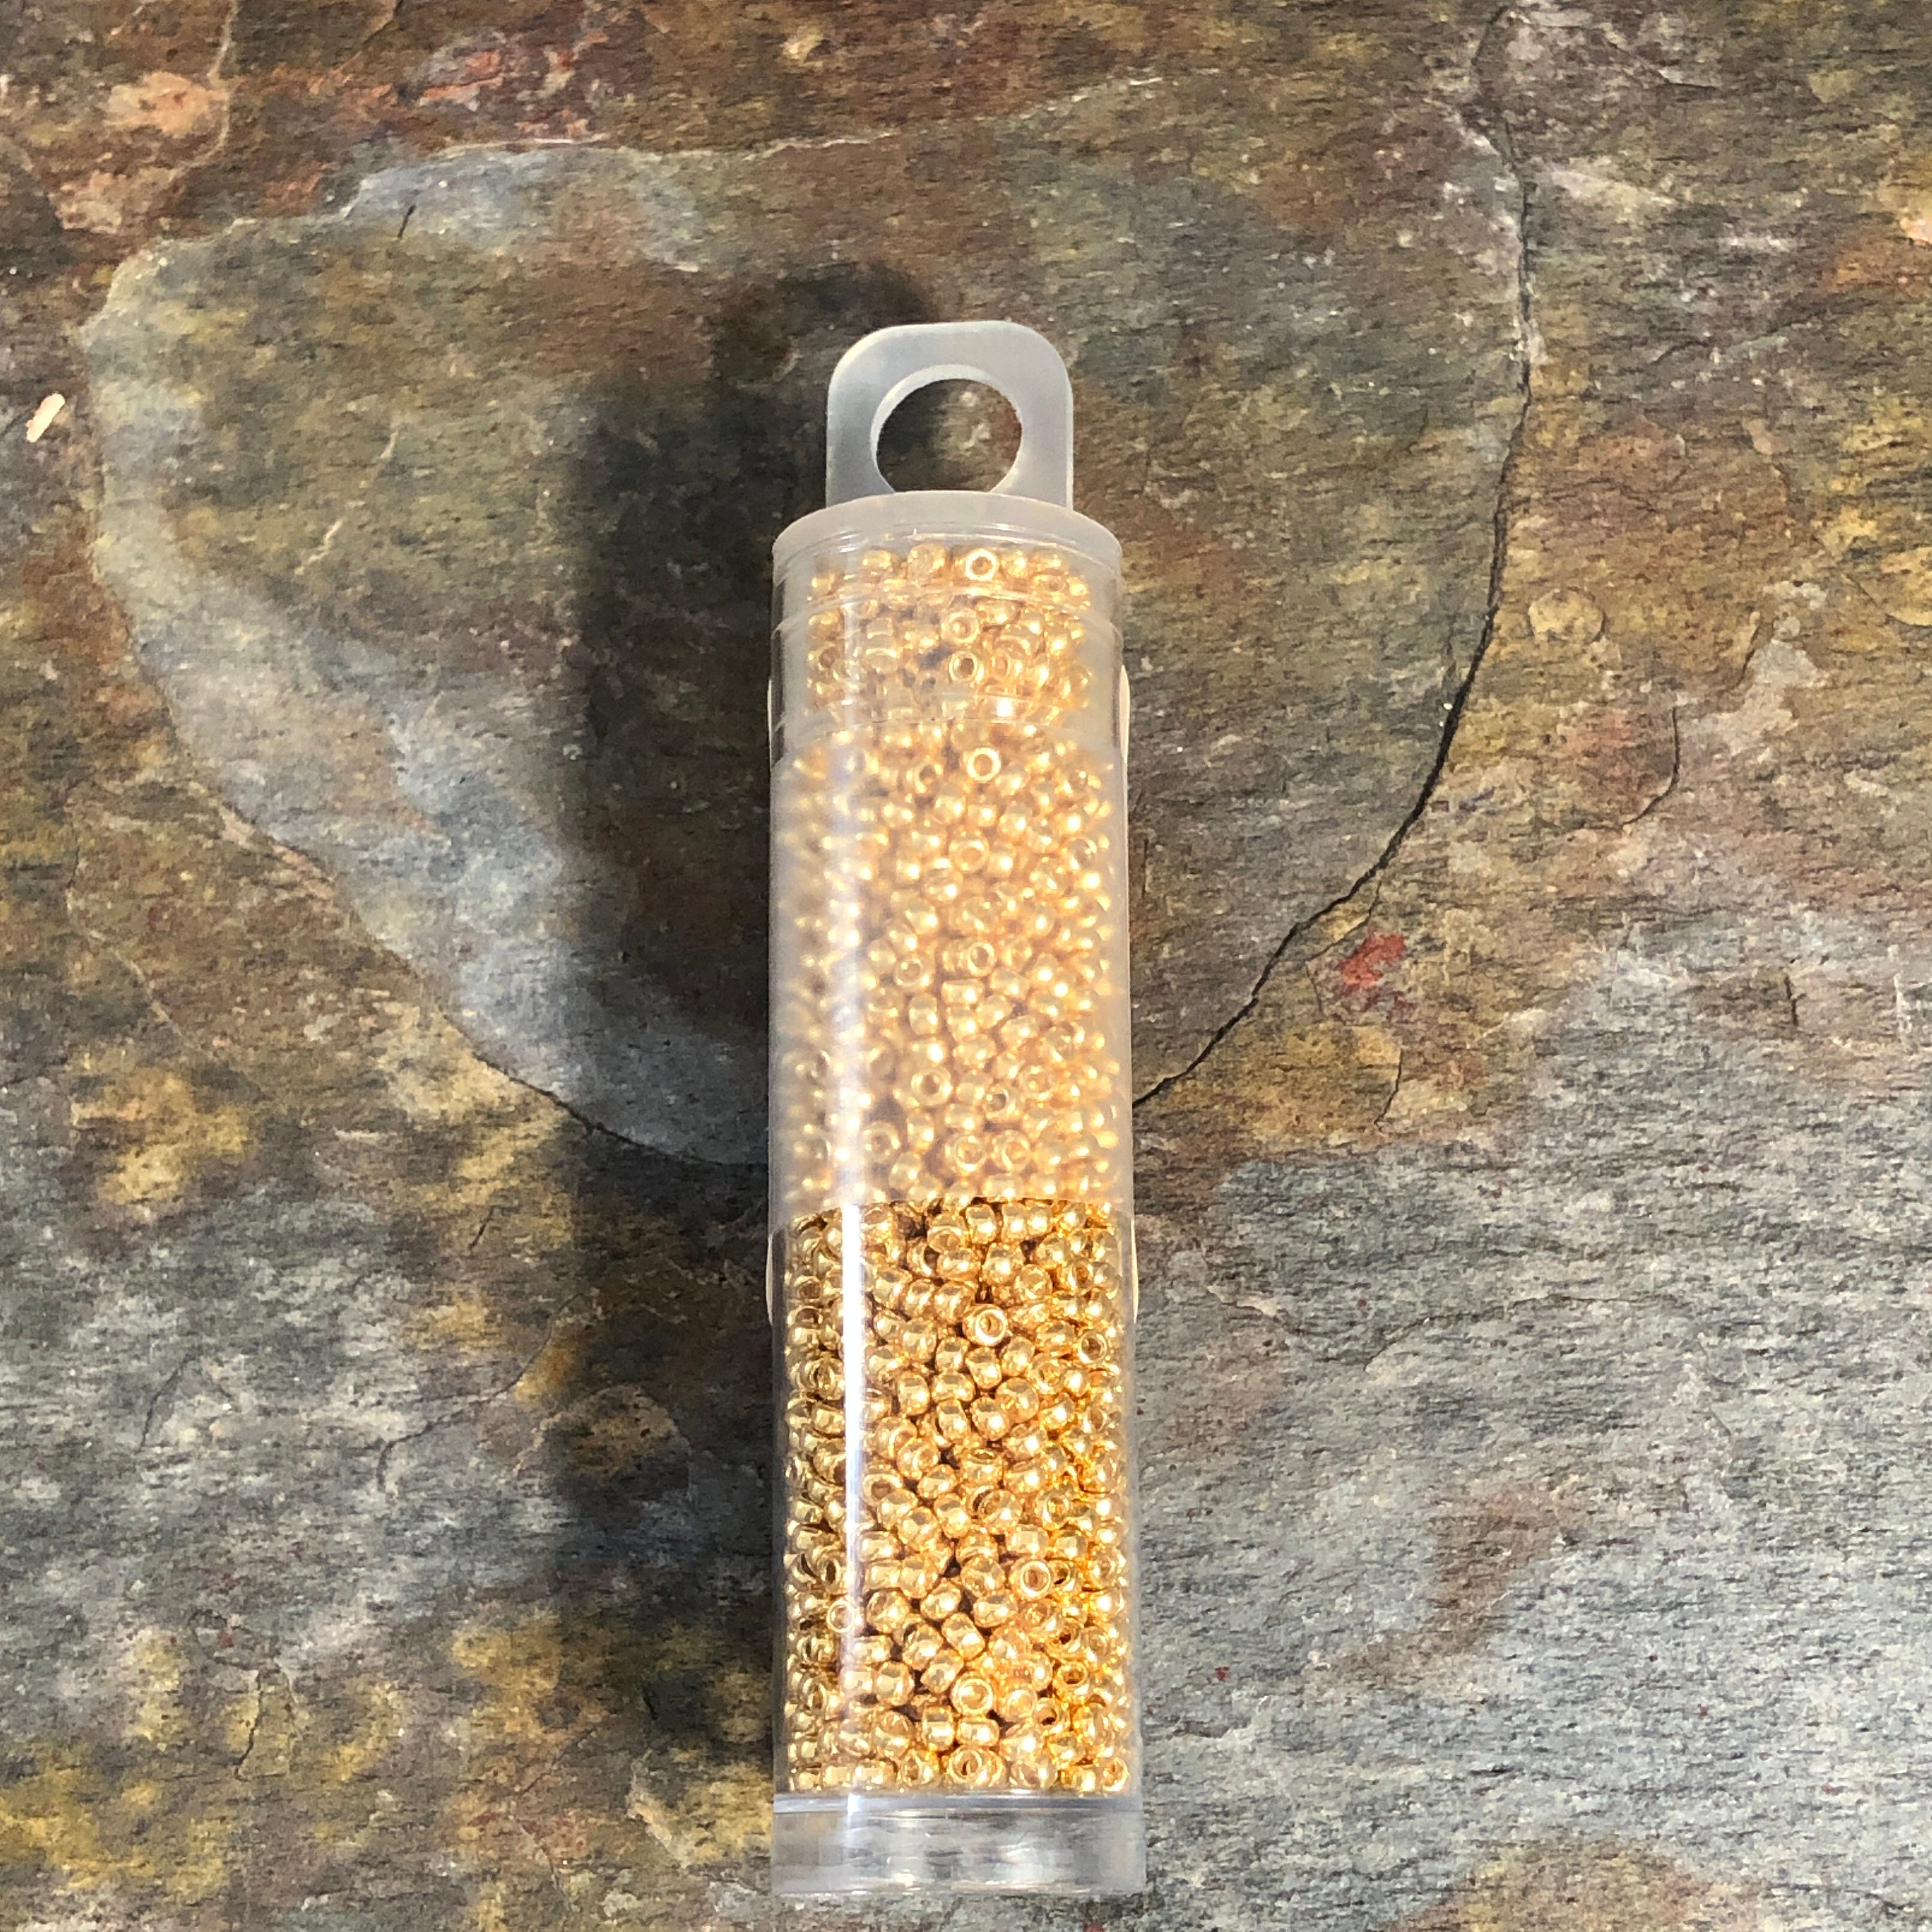 Miyuki Round Seed Bead 15/0 Duracoat Galvanized Gold 2-inch Tube (4202)